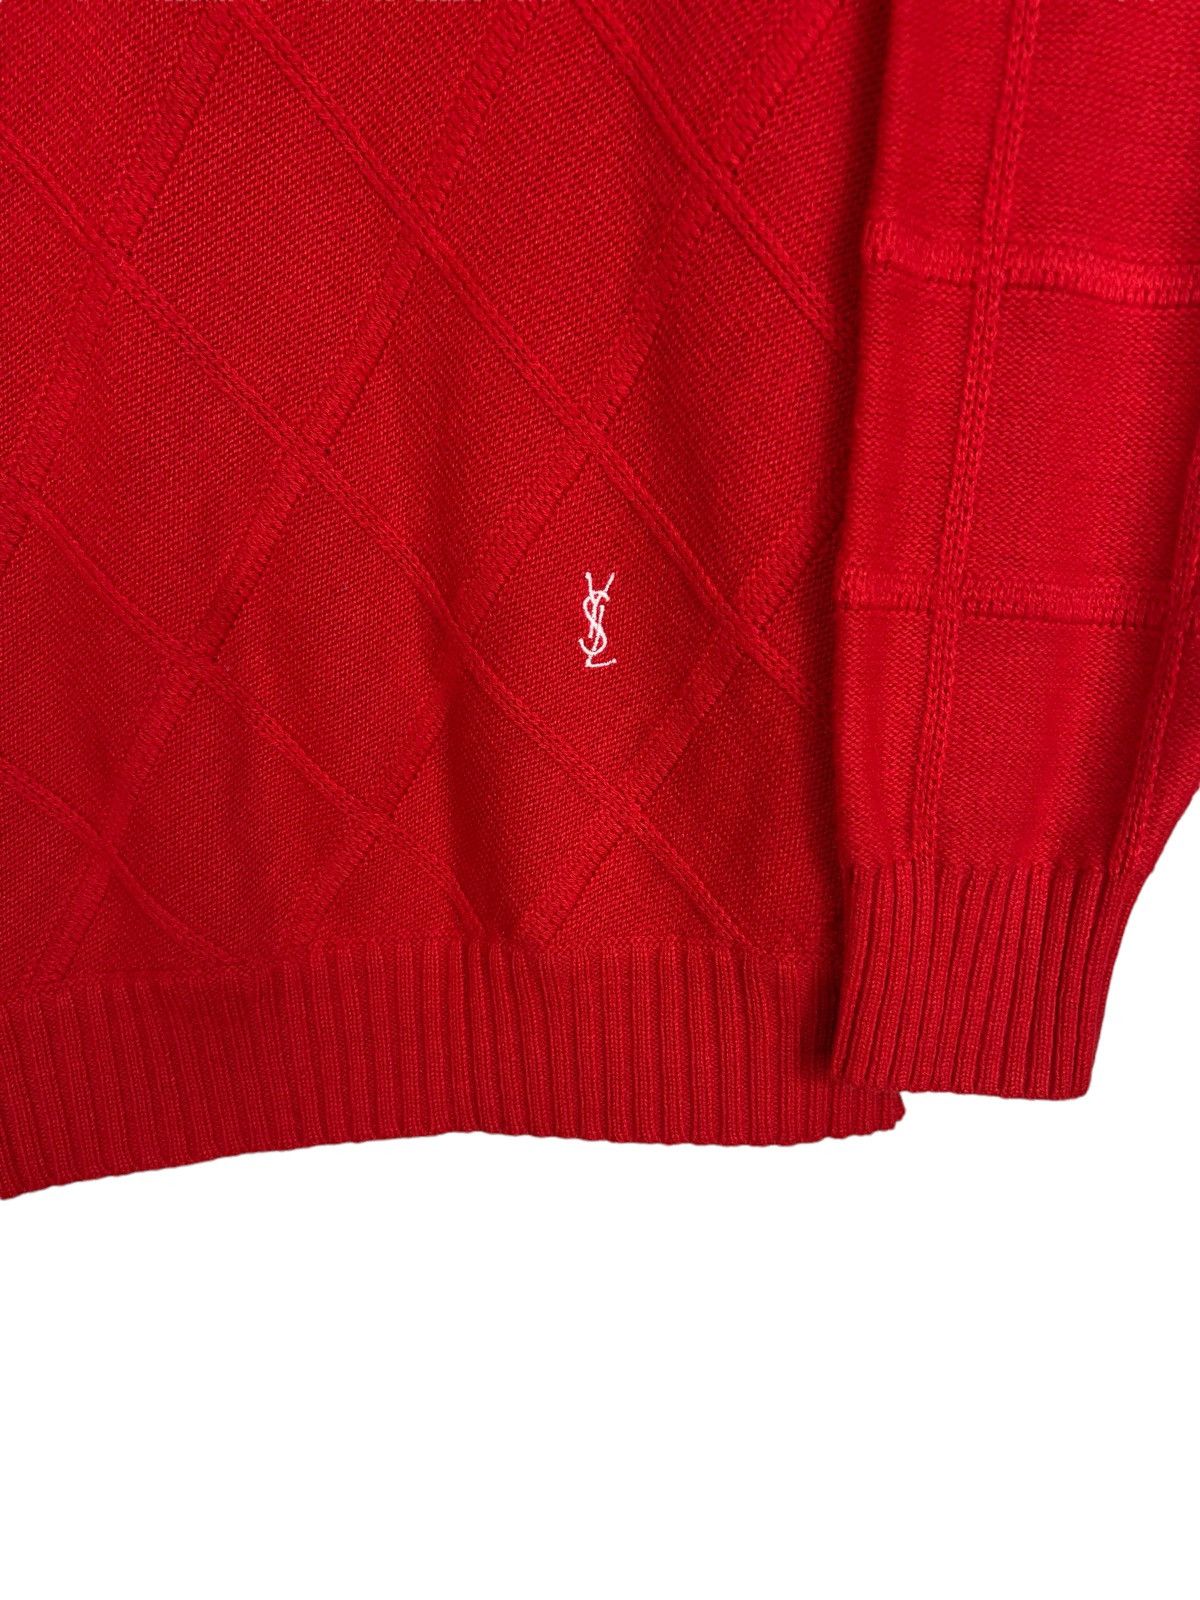 Yves Saint Laurent Kable knit sweater Yves Saint Laurent vintage 90s Paris Size US L / EU 52-54 / 3 - 3 Thumbnail